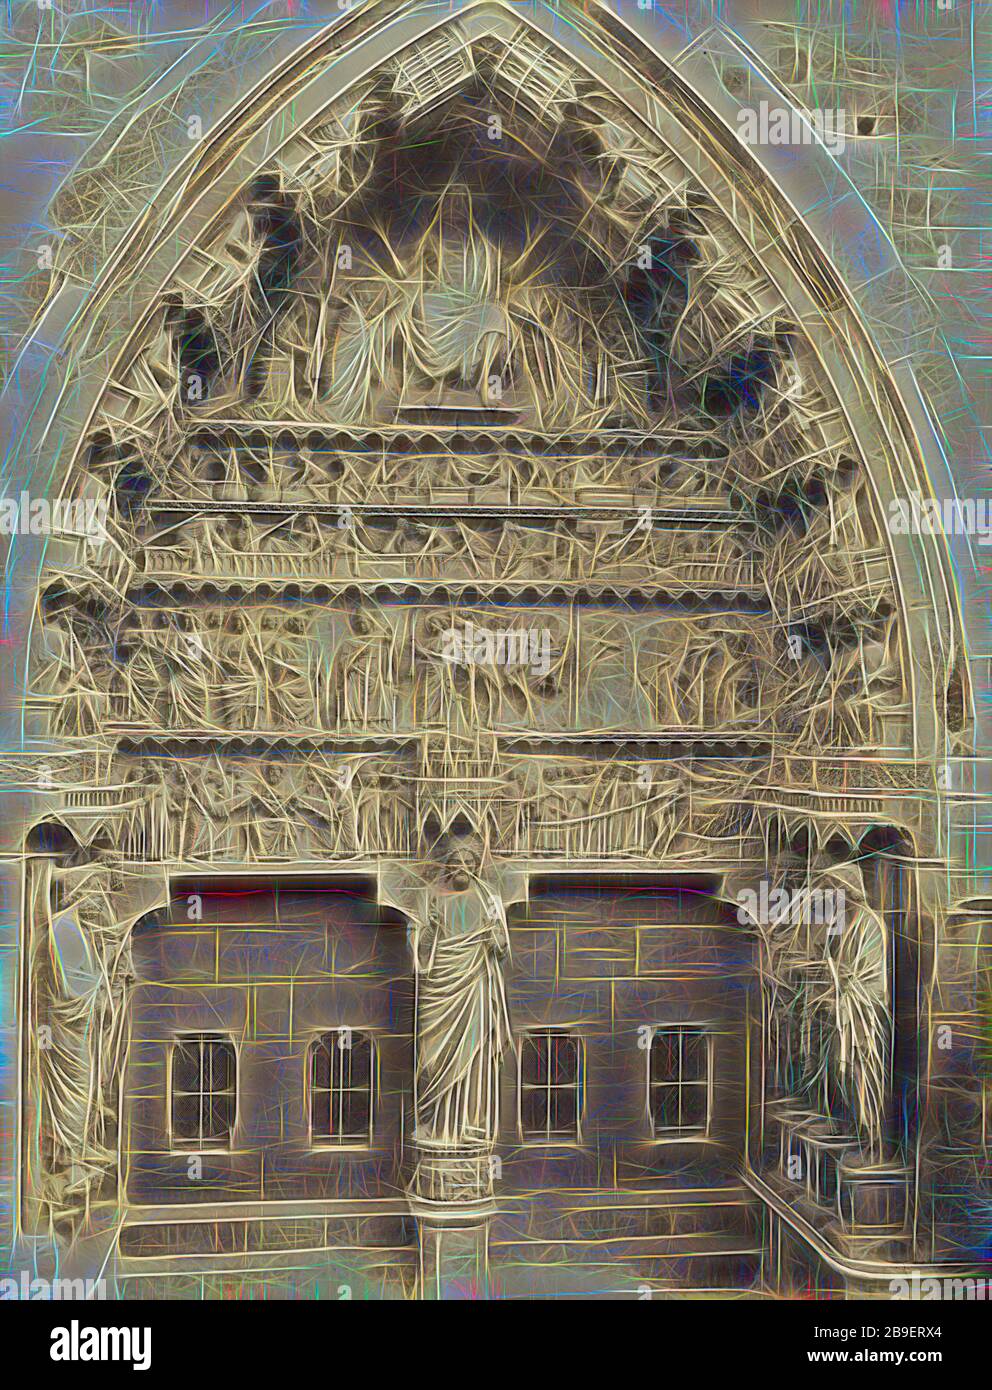 Portale del Nord porta - Cattedrale di Reims; Reims, Francia; 1870 - 1880;  albume silver stampa Foto stock - Alamy